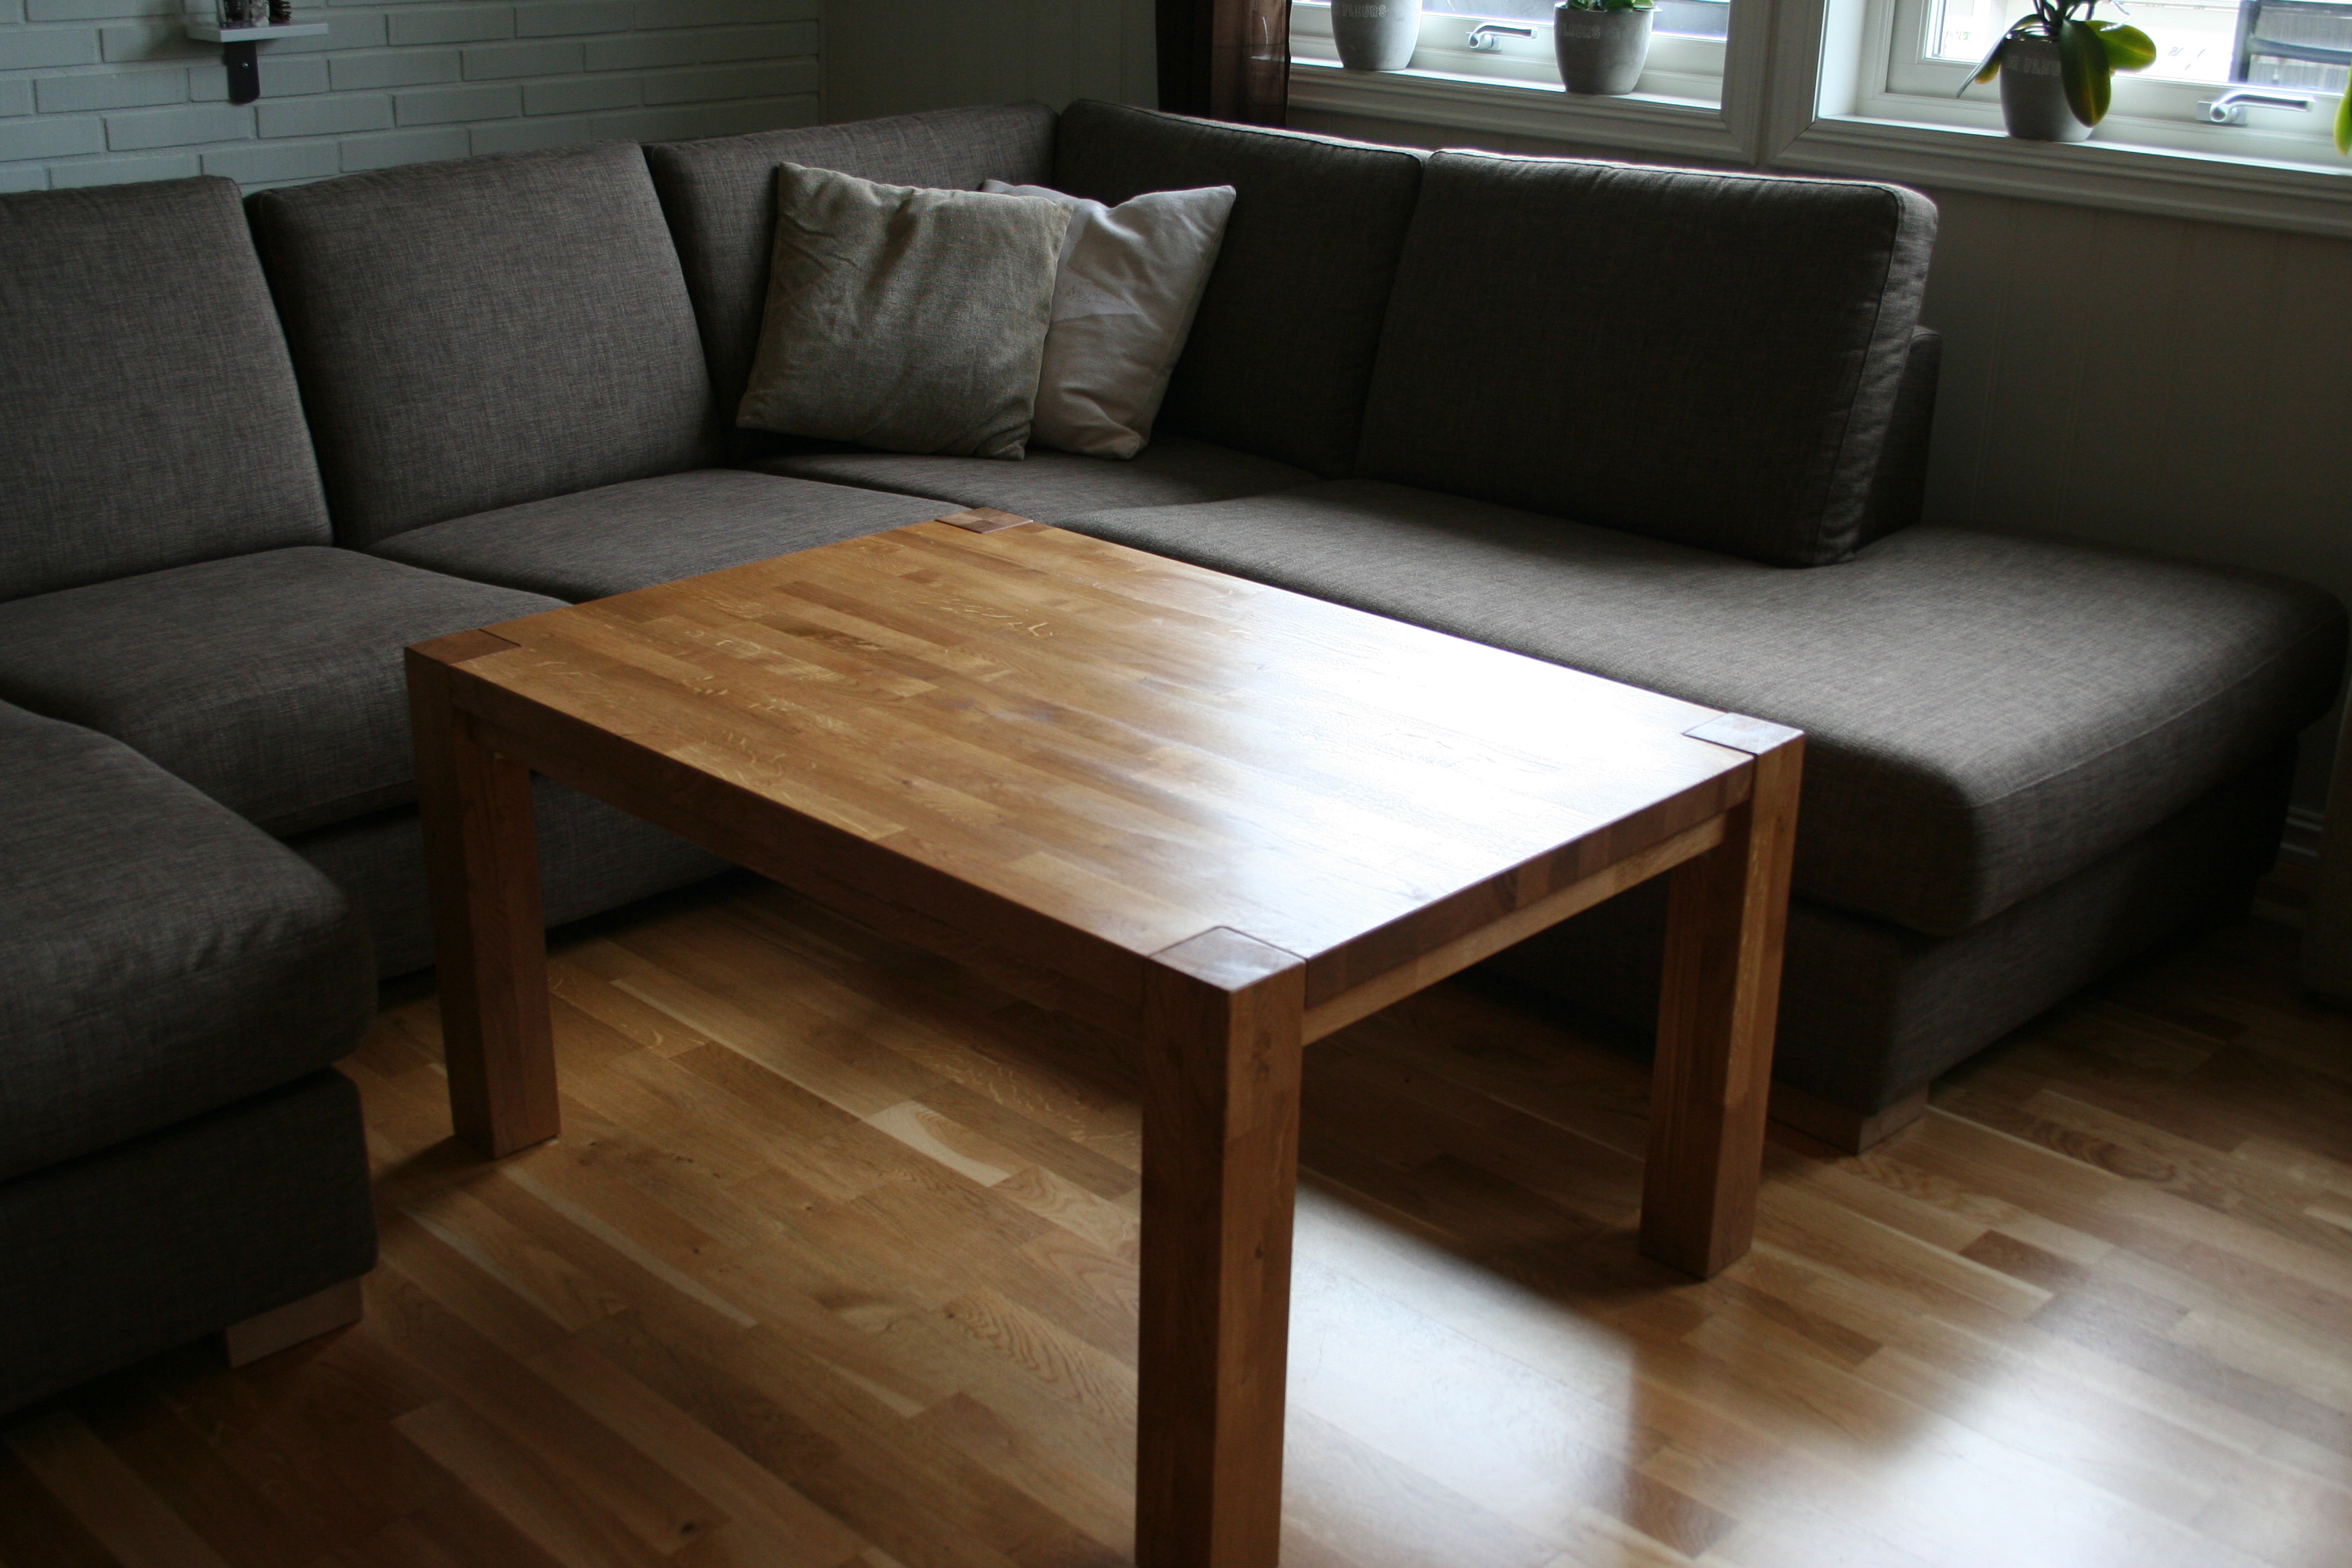 Storfe: Lage egne bord i heltre eik (prosjekttråd med bilder) - IMG_4807.JPG - Storfe